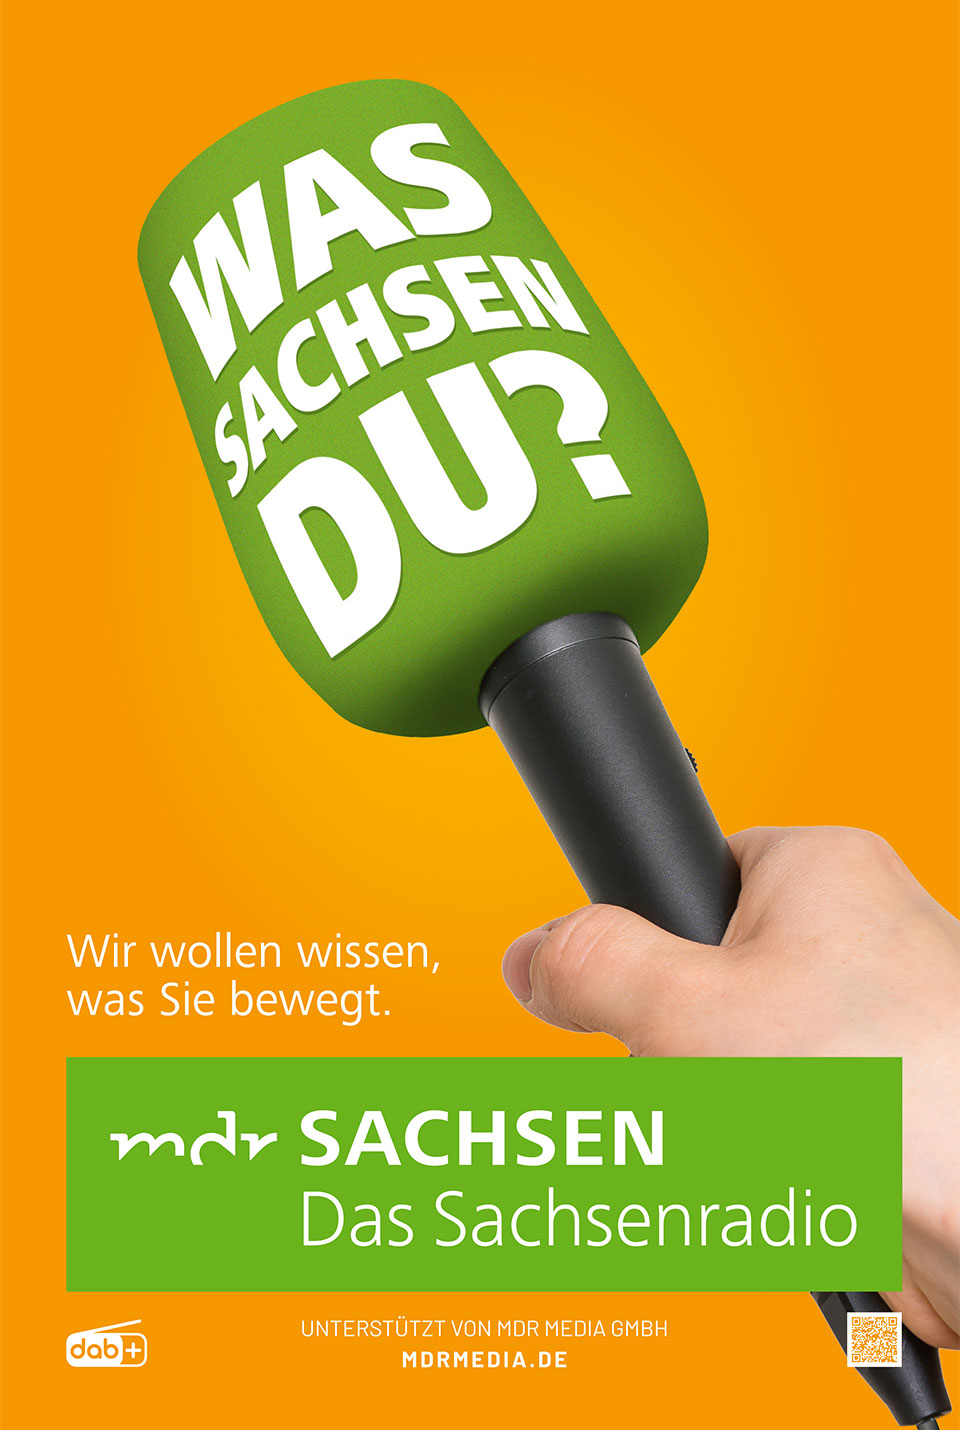 Plakatmotiv für MDR SACHSEN (Foto: MDR Media)